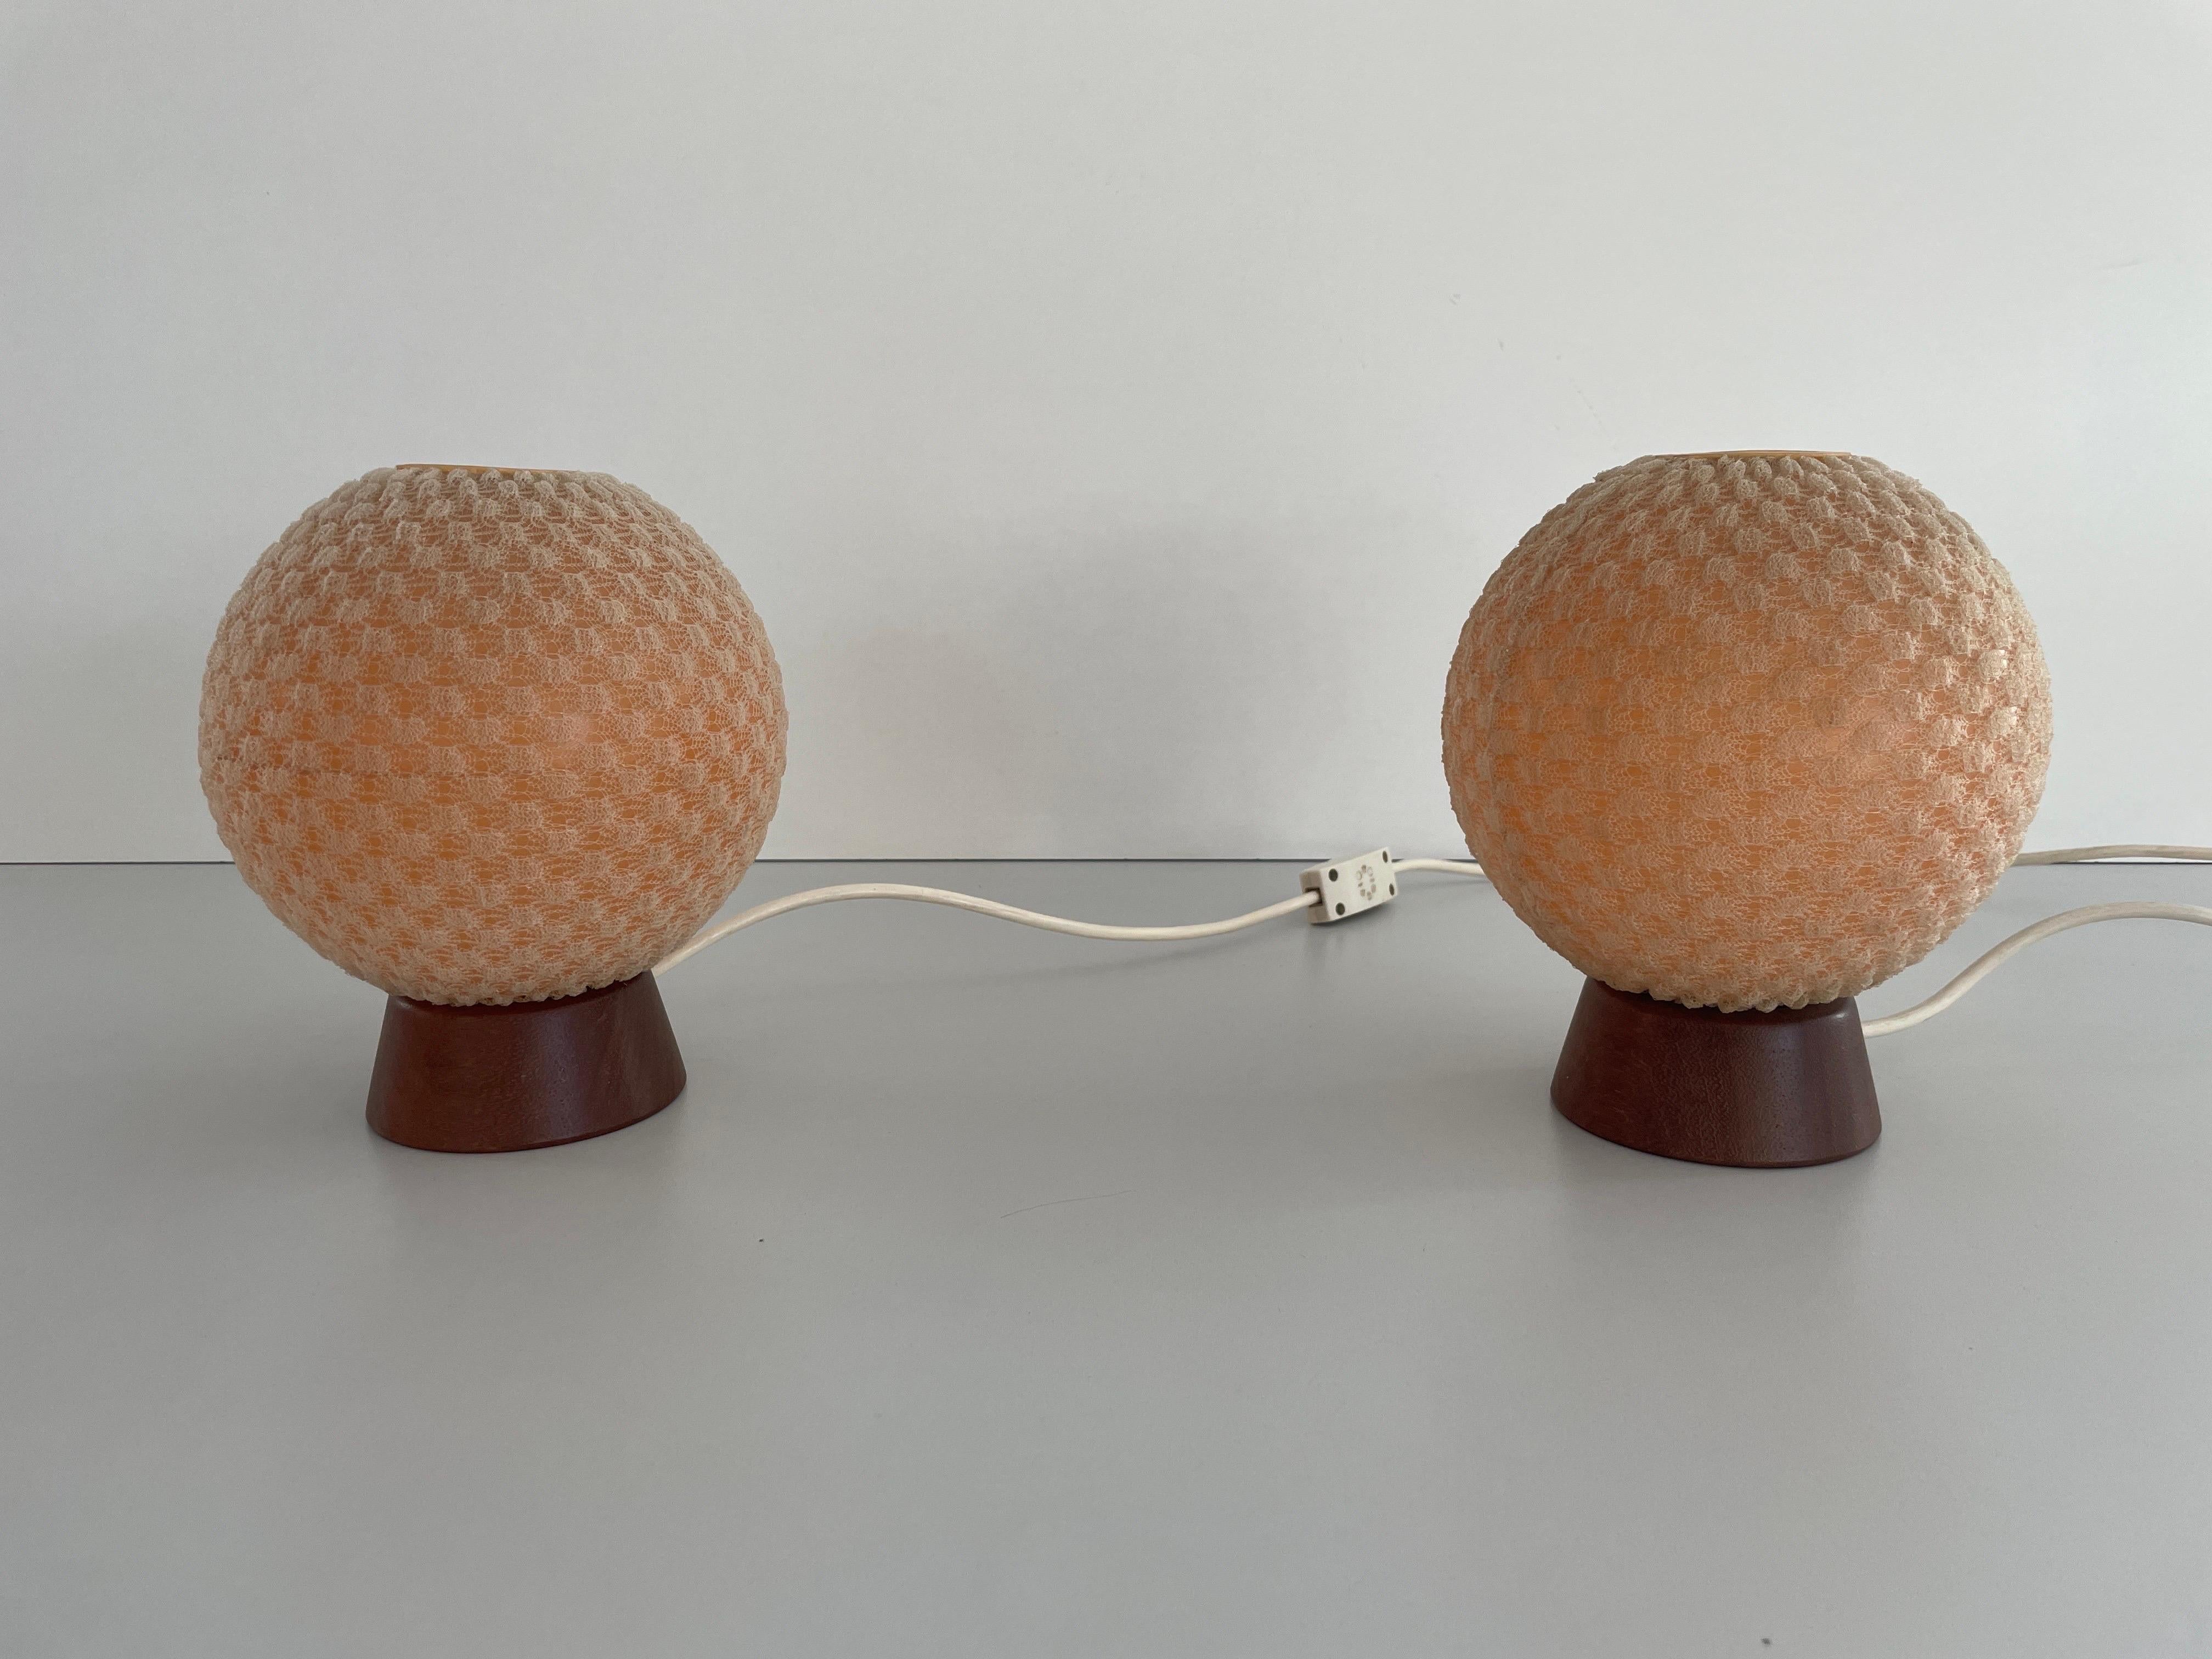 Paar Nachttische aus Teakholz mit Kugel-Stoffschirm von Temde, 1960er Jahre, Deutschland

Elegante und minimalistische Tischlampen

Die Lampenschirme sind in gutem Zustand und sehr sauber. 

Diese Lampe funktioniert mit einer E14-Glühbirne.